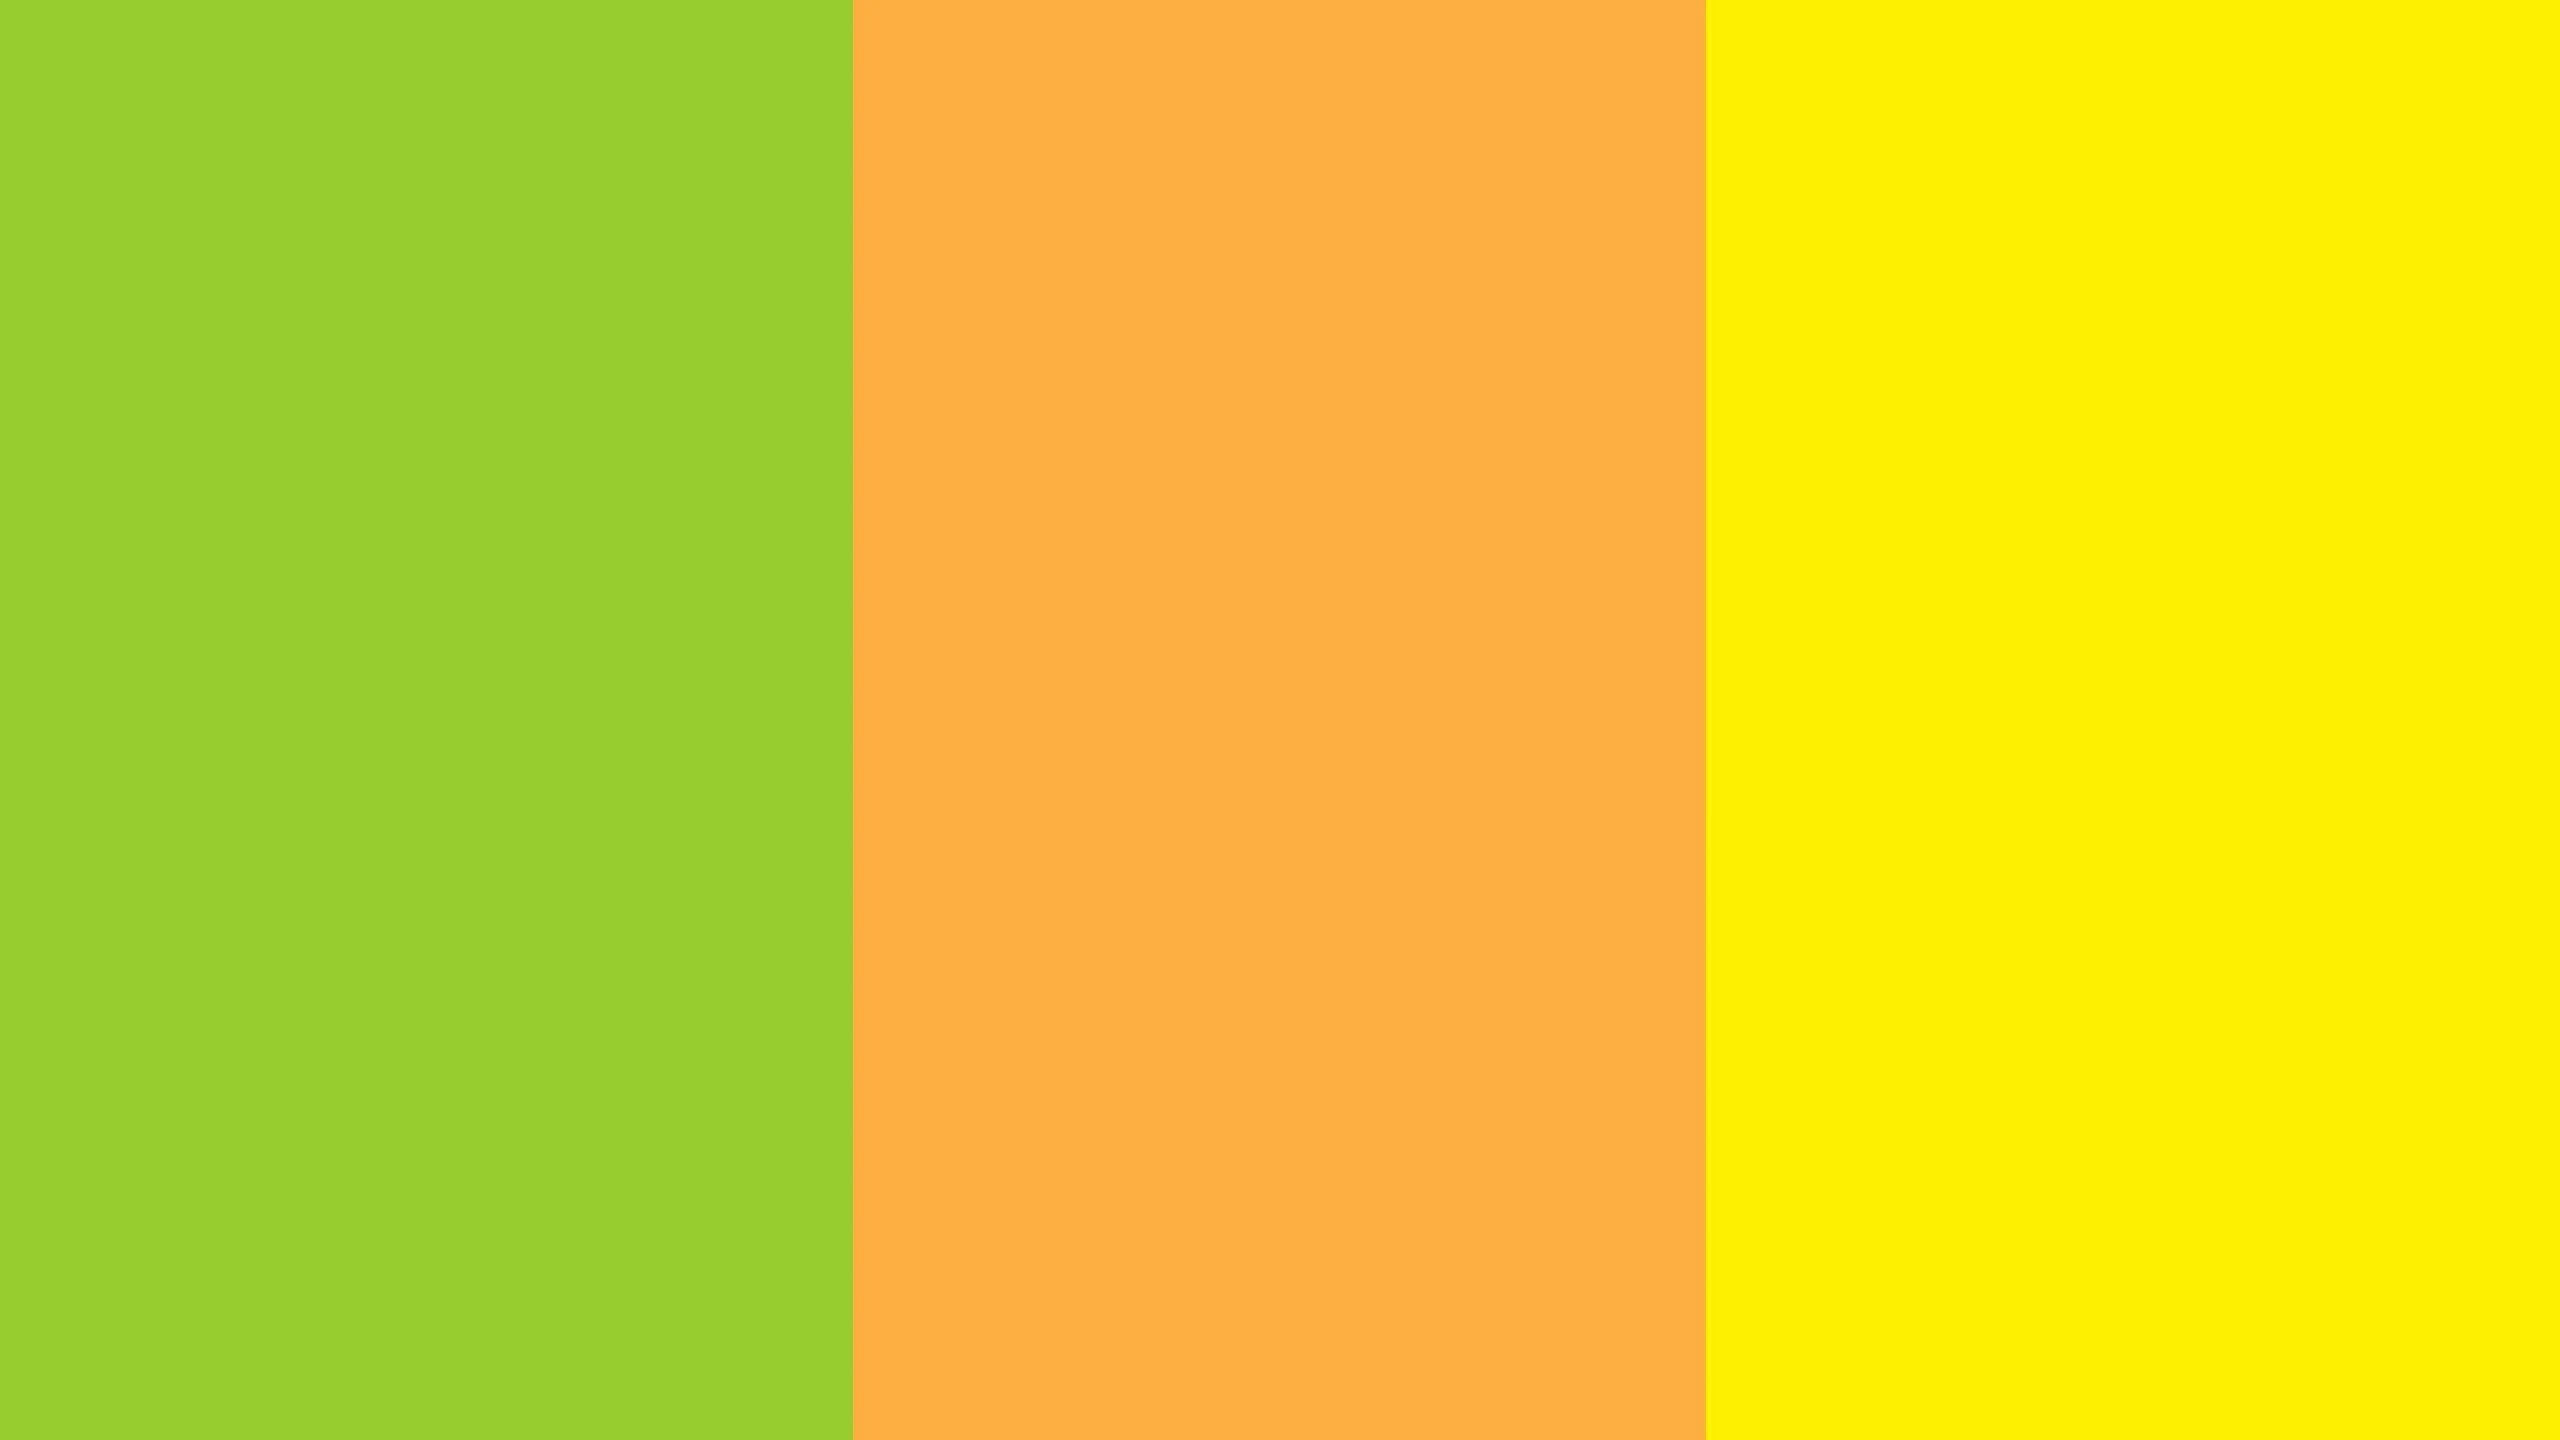 Цвет темный желтовато зеленый. Желто-зеленый цвет. Оттенки желтого и зеленого. Желто-оранжевый цвет. Цветовая палитра желтый.